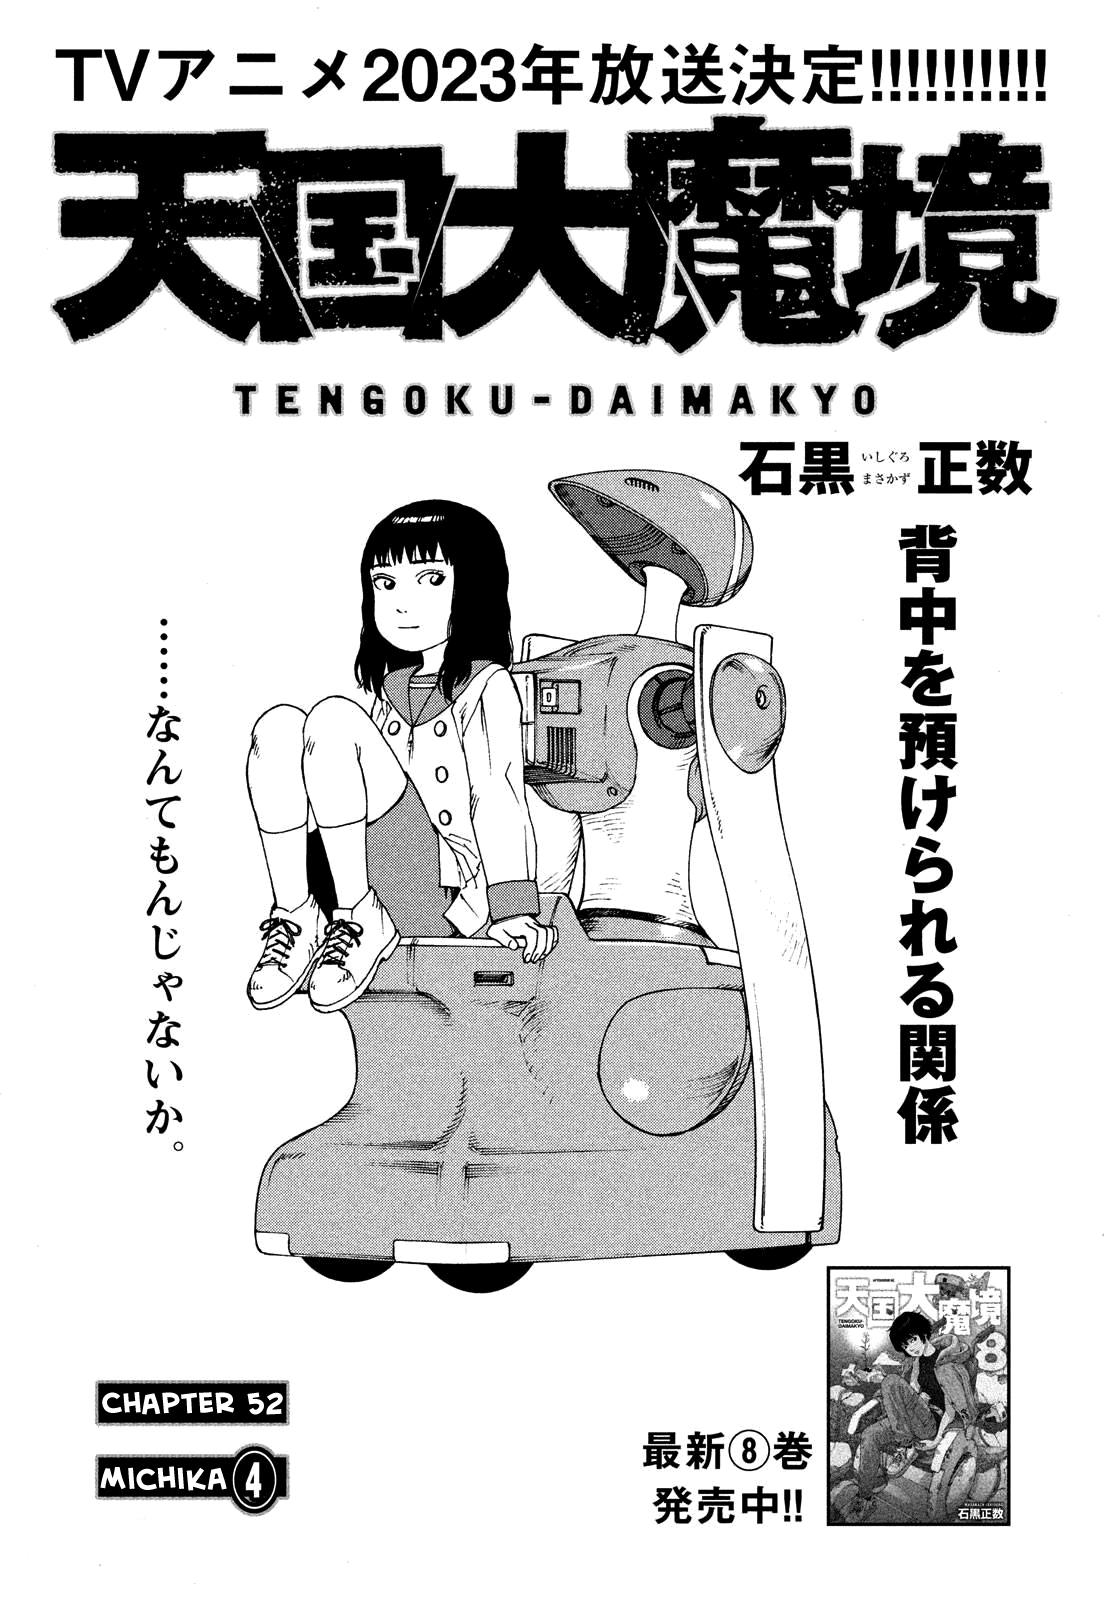 Tengoku Daimakyou Vol.9 Chapter 52: Michika ➃ page 1 - Mangakakalot